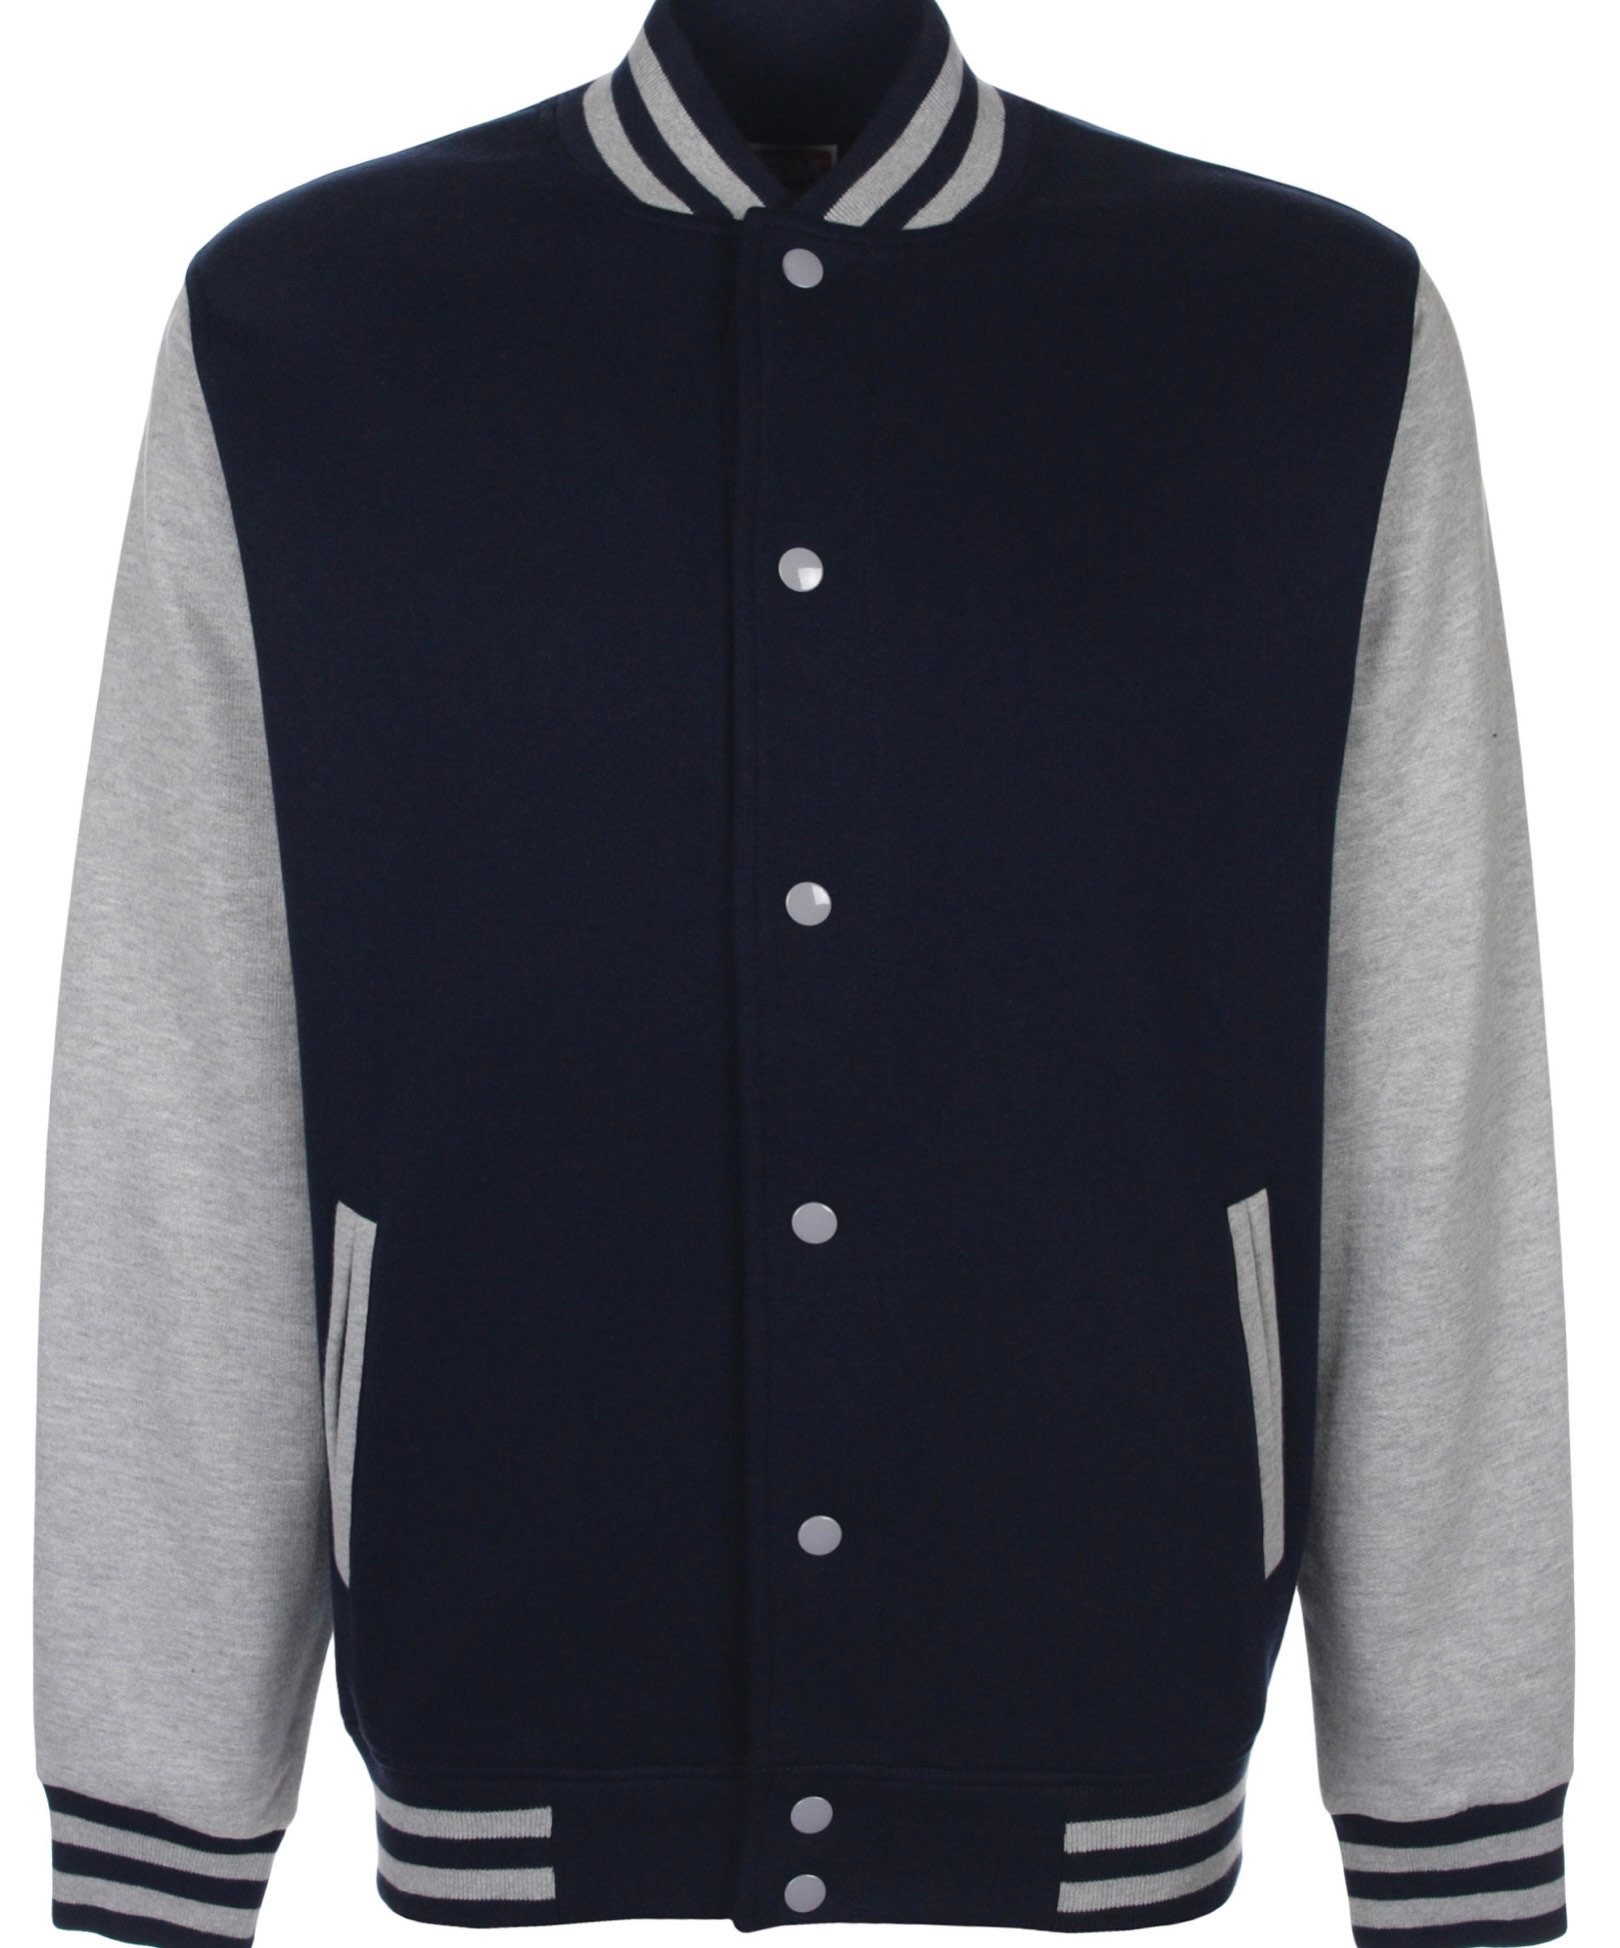 Varsity letterman jacket-Ivy league-preppy style | Etsy